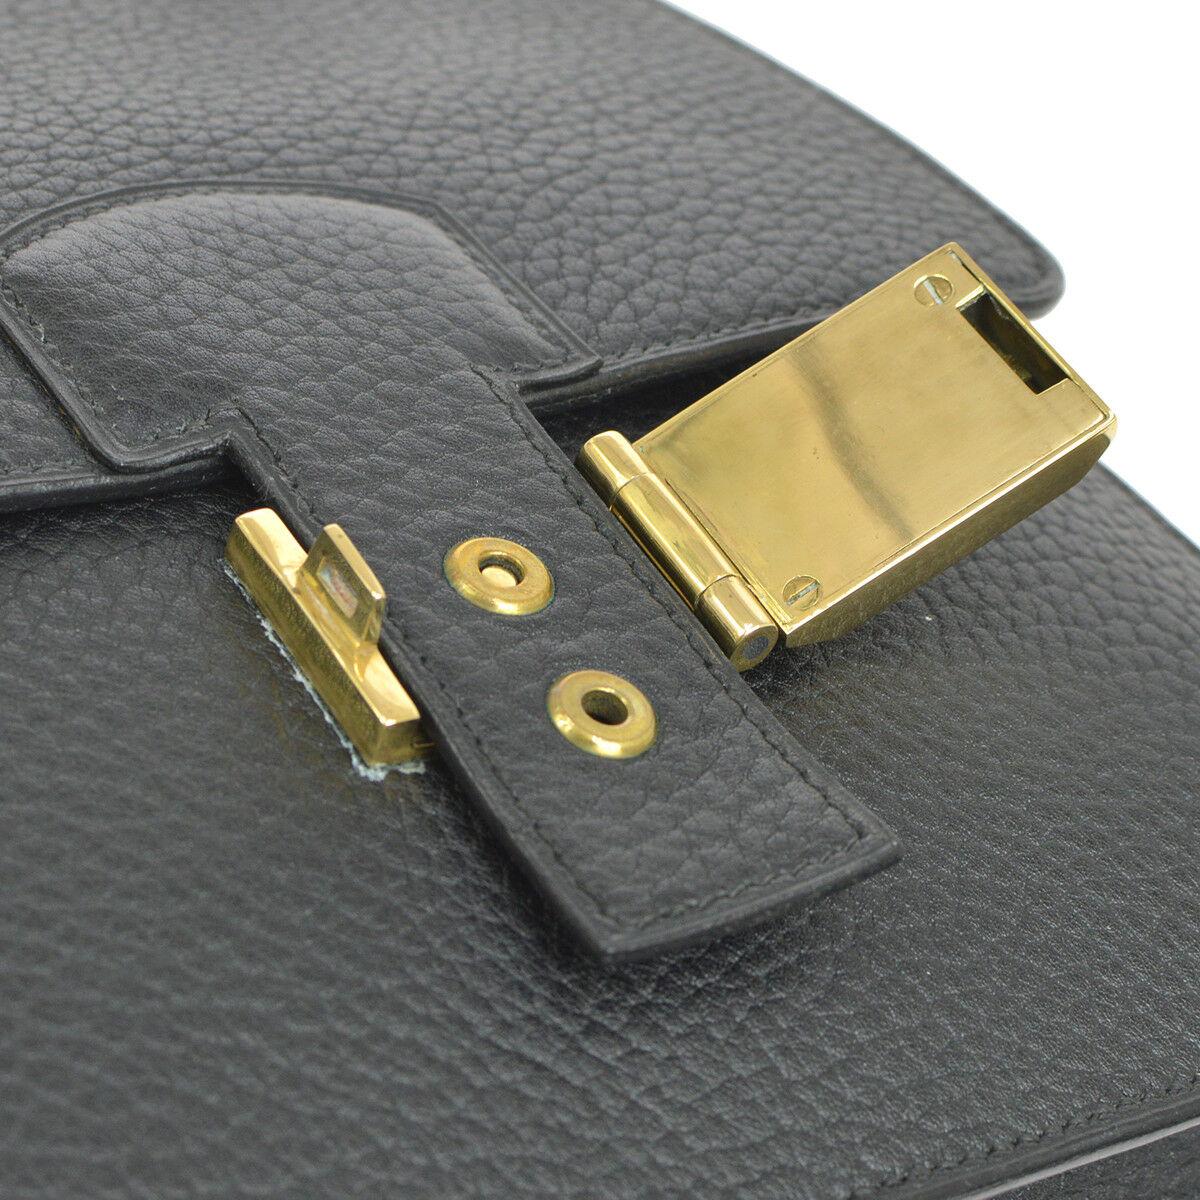 Hermes Black Leather Gold Flip Lock Buckle Evening Top Handle Shoulder Flap Bag

Leather
Gold tone hardware
Fliplock closure
Made in France
Date code present
Adjustable shoulder strap 8.5-15.5